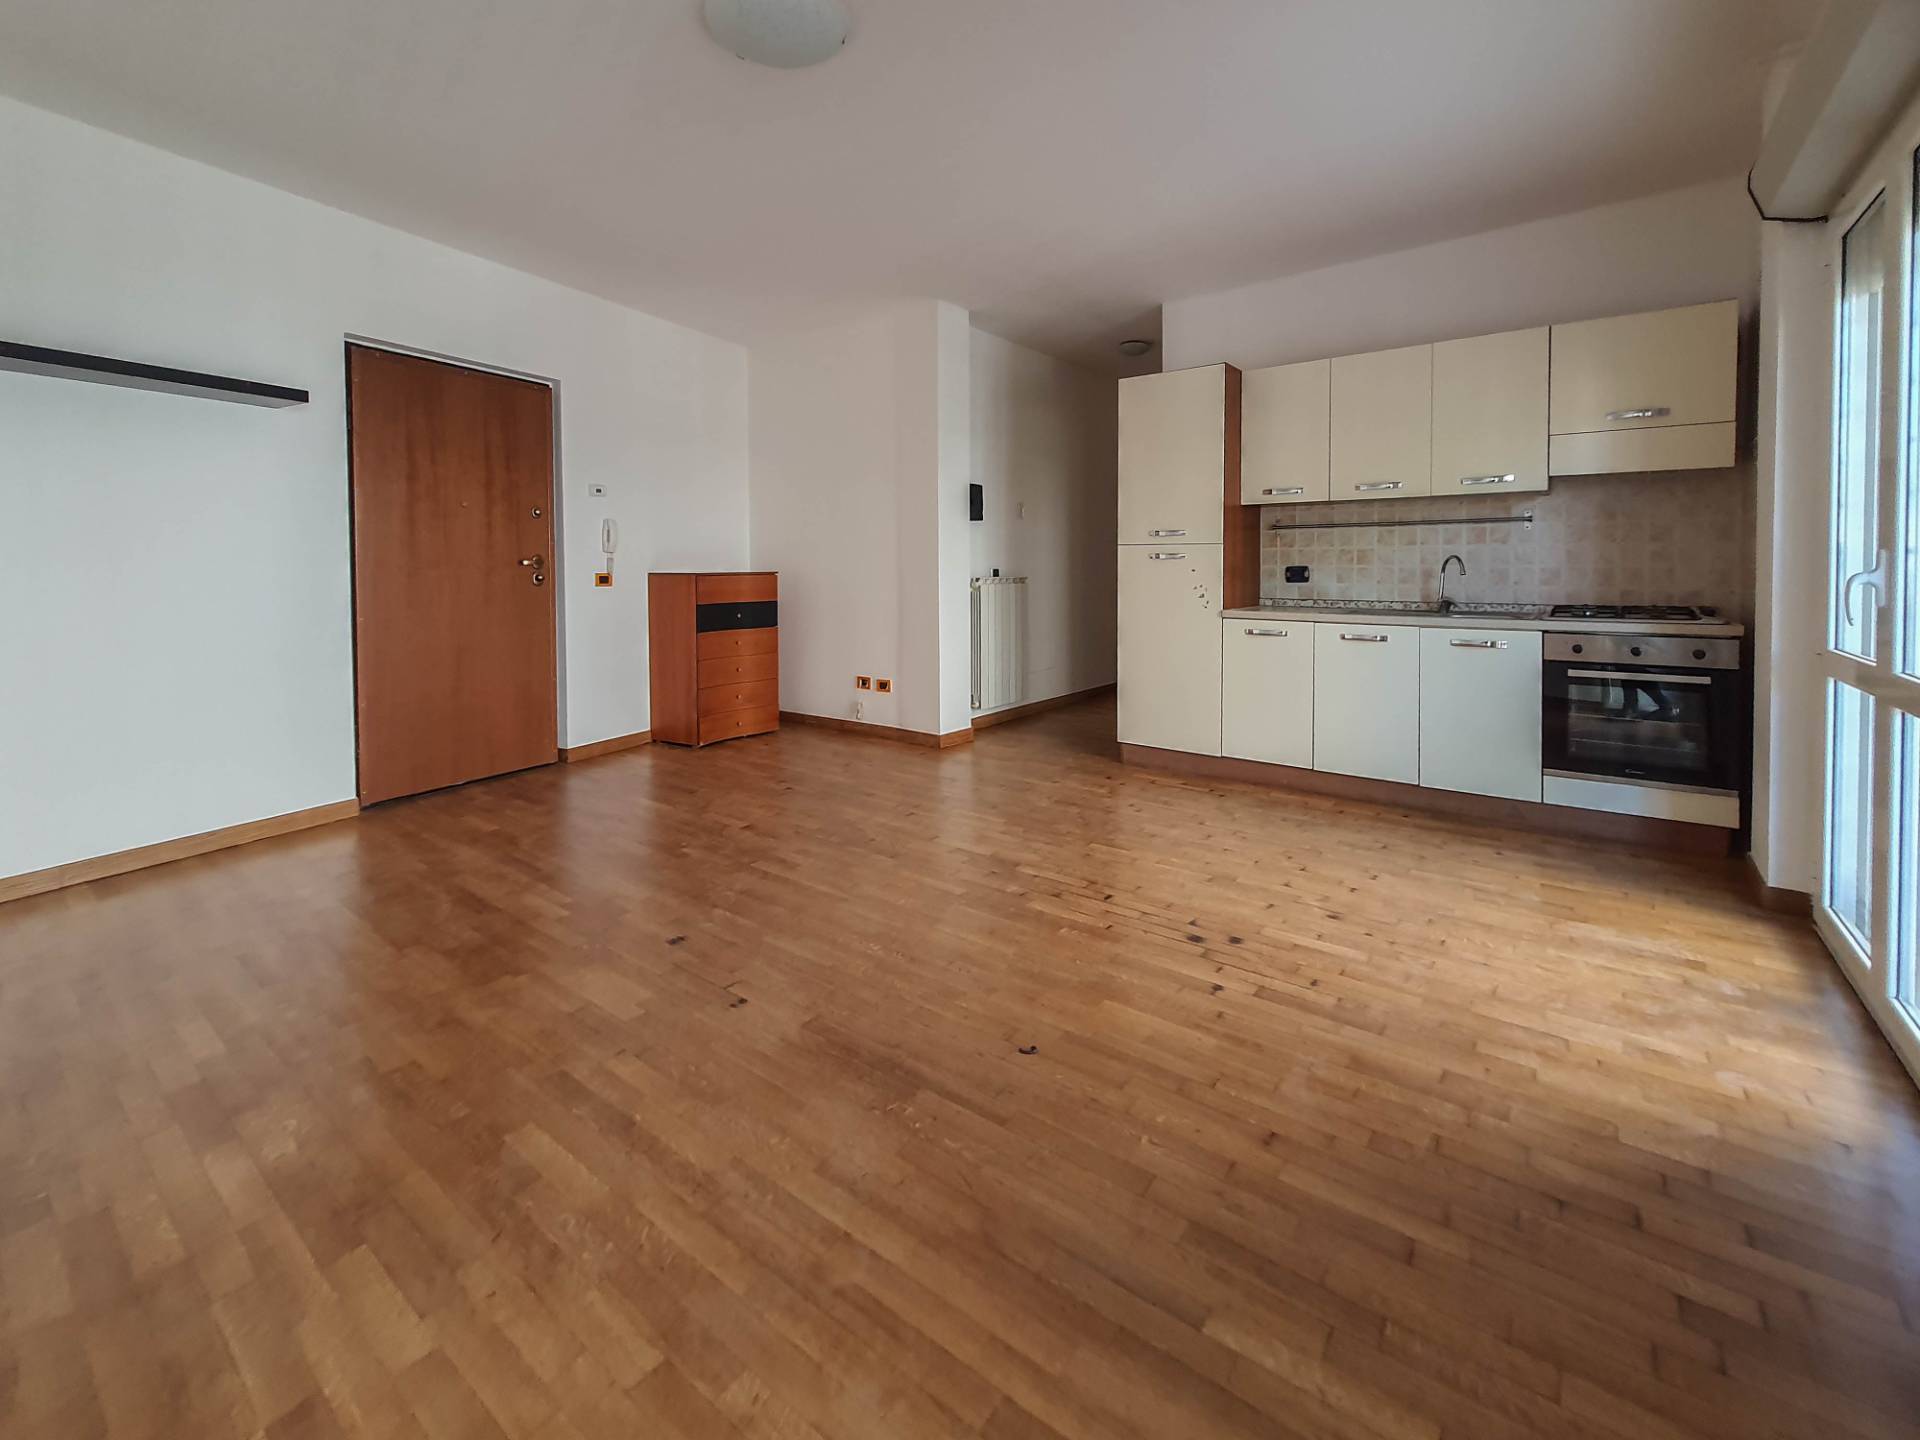 Appartamento in vendita a Fiano Romano, 2 locali, prezzo € 110.000 | PortaleAgenzieImmobiliari.it